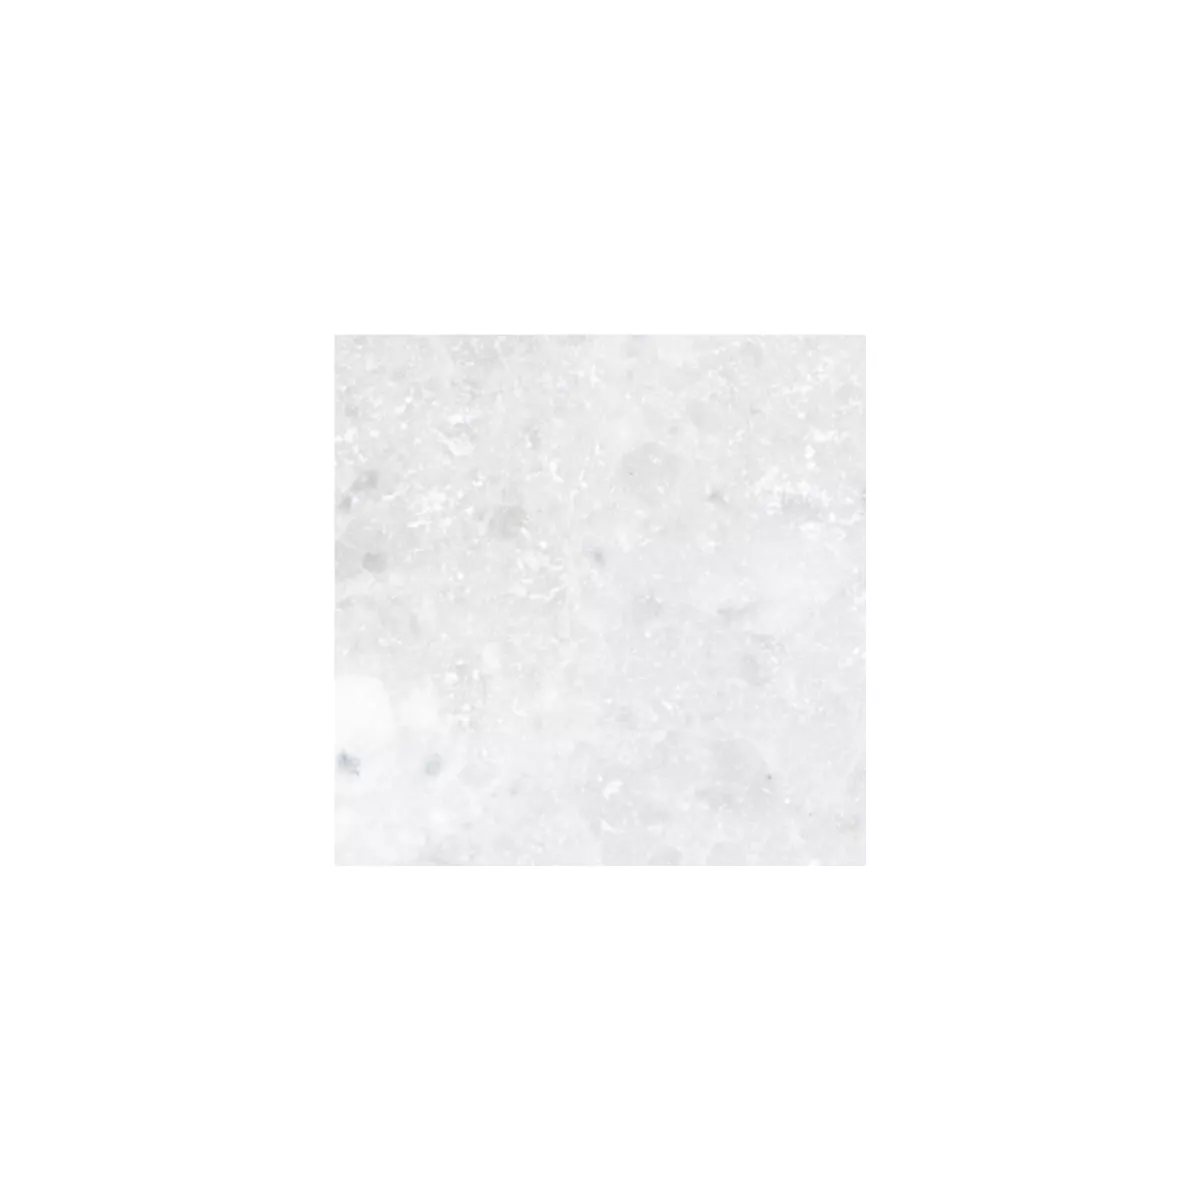 Sample Natural Stone Tiles Marble Treviso White 10x10cm